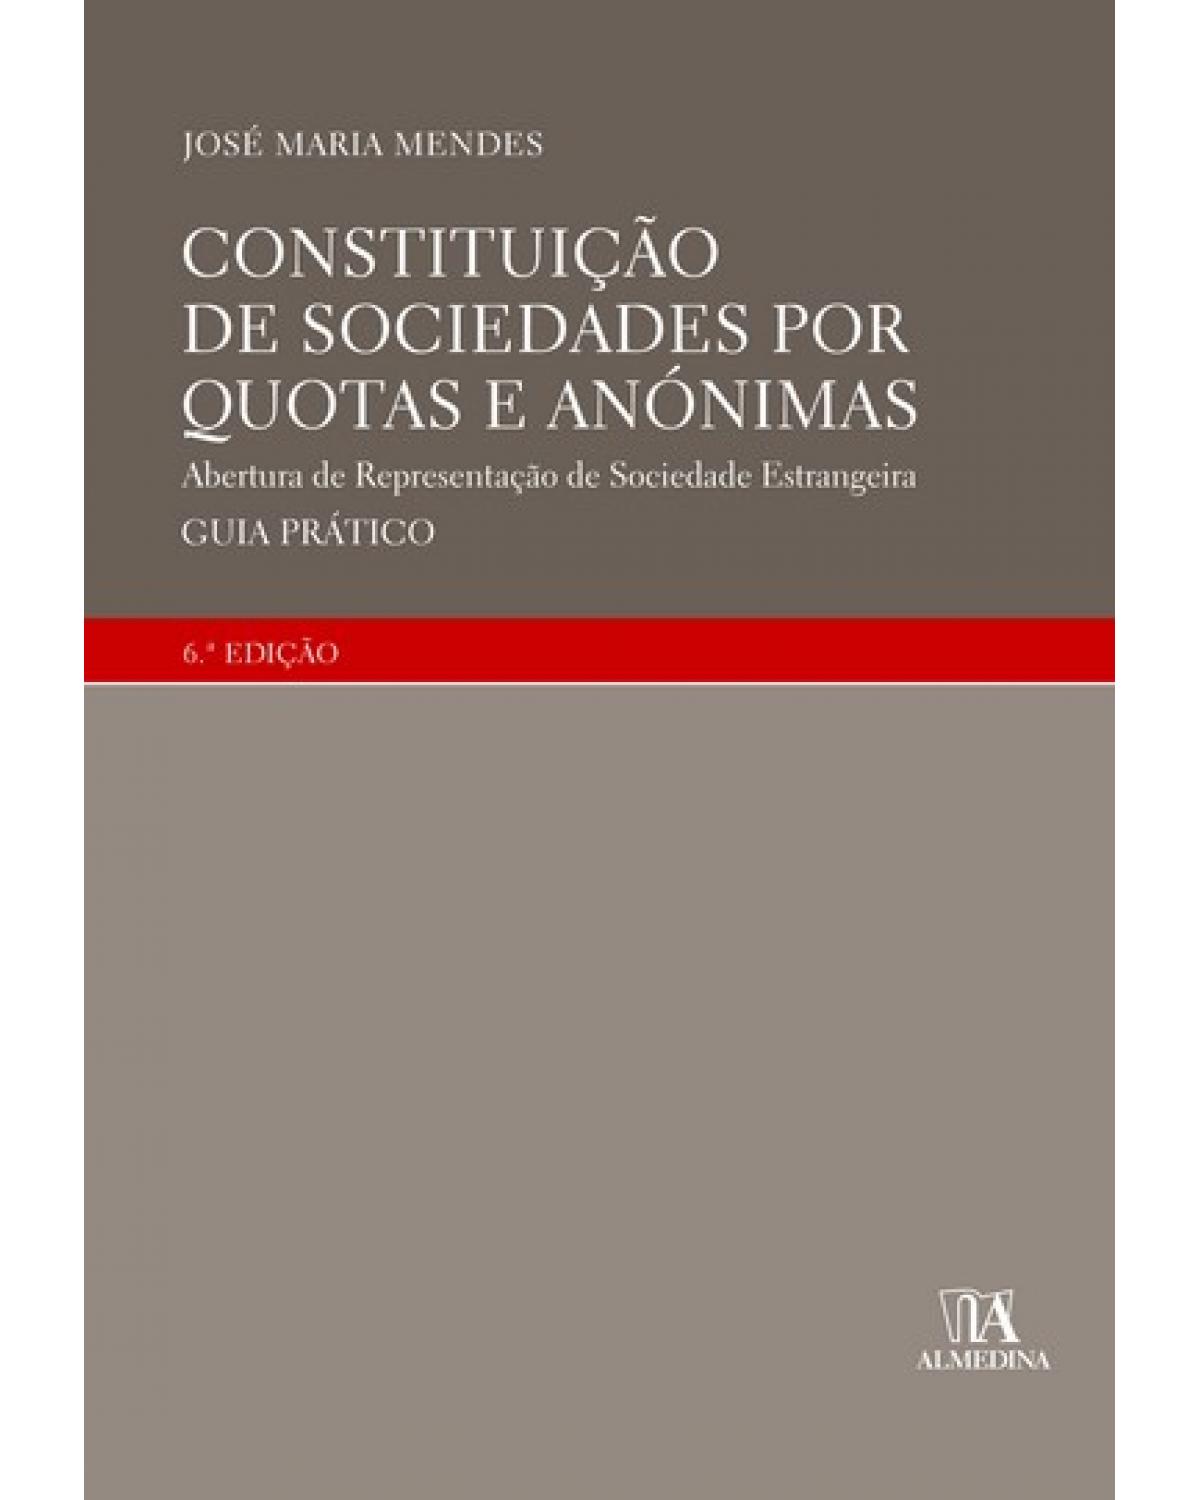 Constituição de sociedades por quotas e anónimas - abertura de representação de sociedade estrangeira - Guia prático - 6ª Edição | 2007